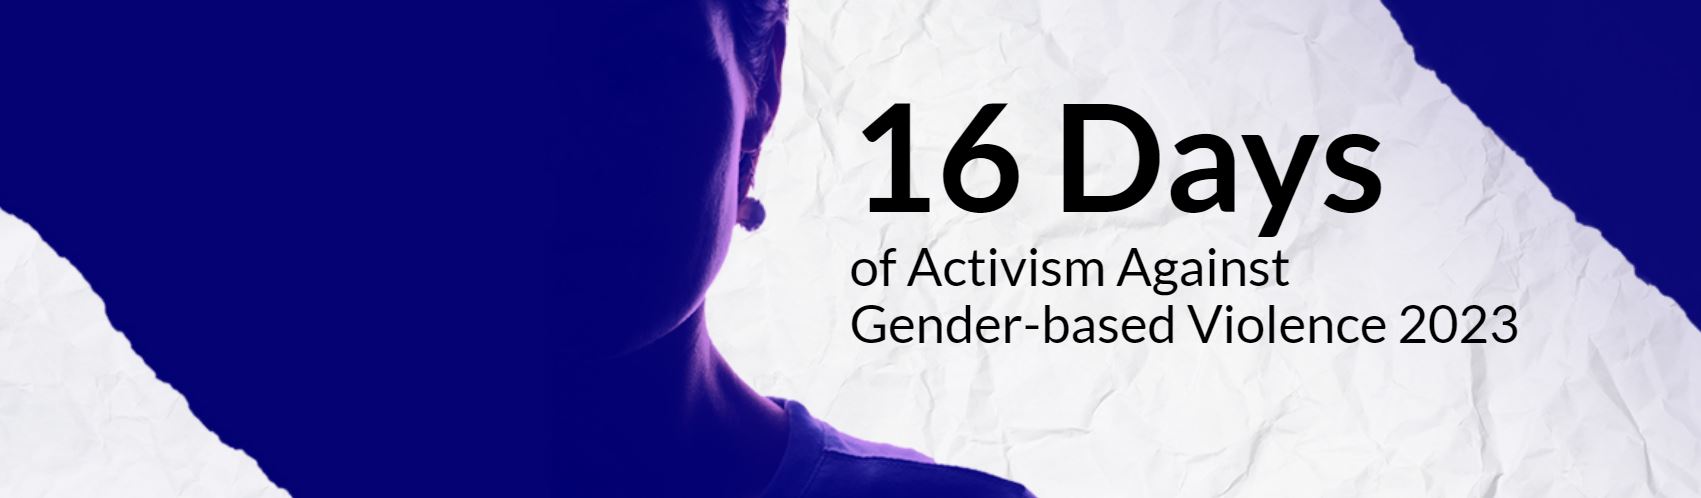 16 Days of Activism Against Gender-based Violence 2023